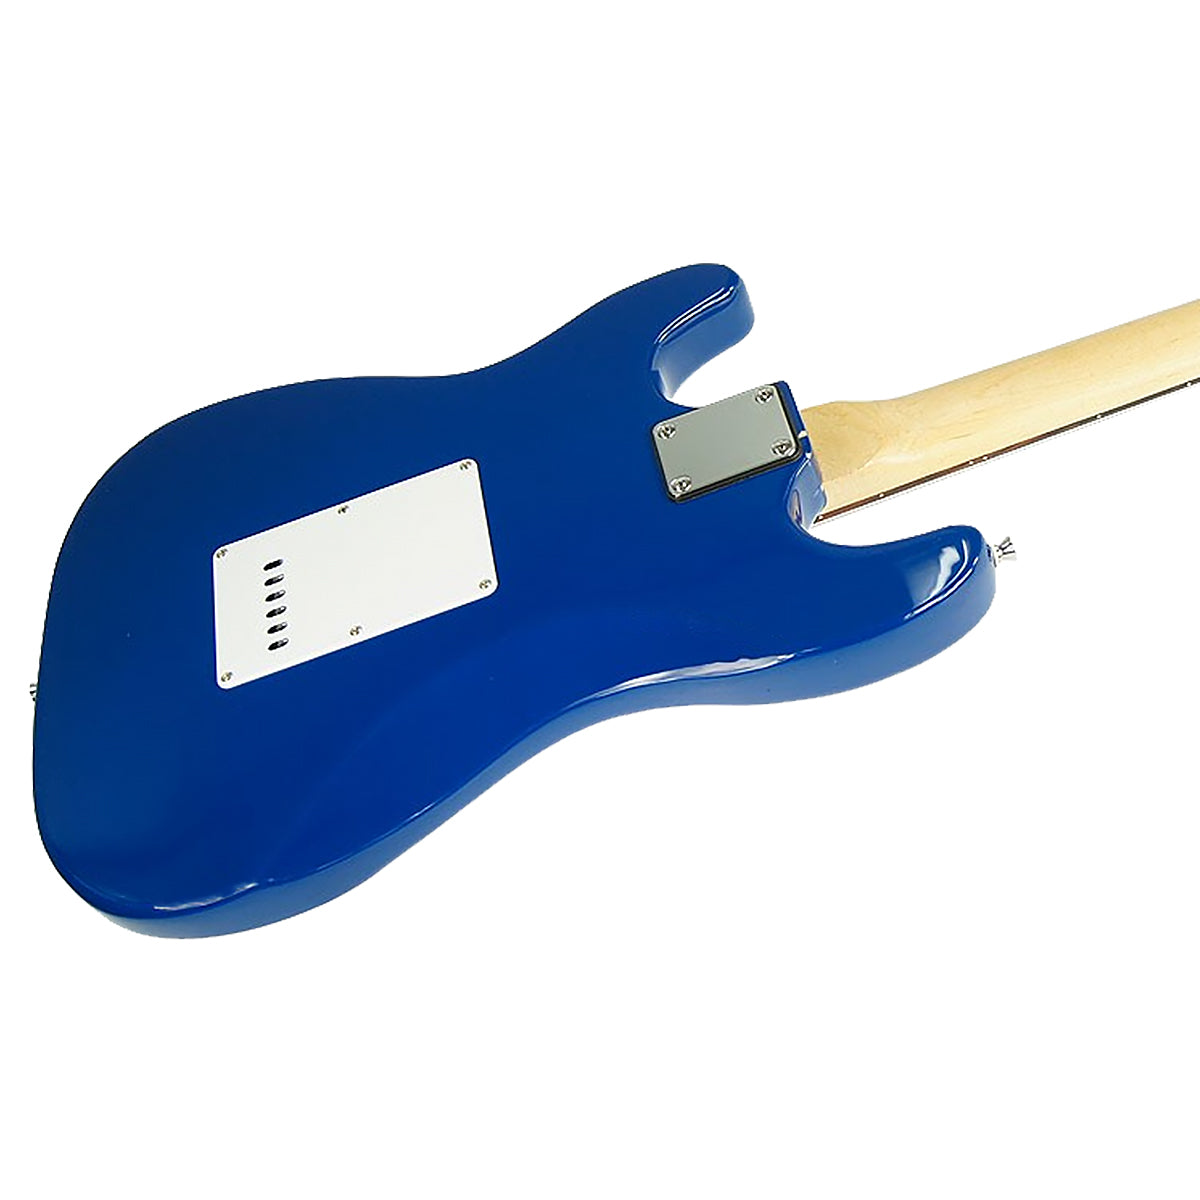 39in Electric Guitar - Blue